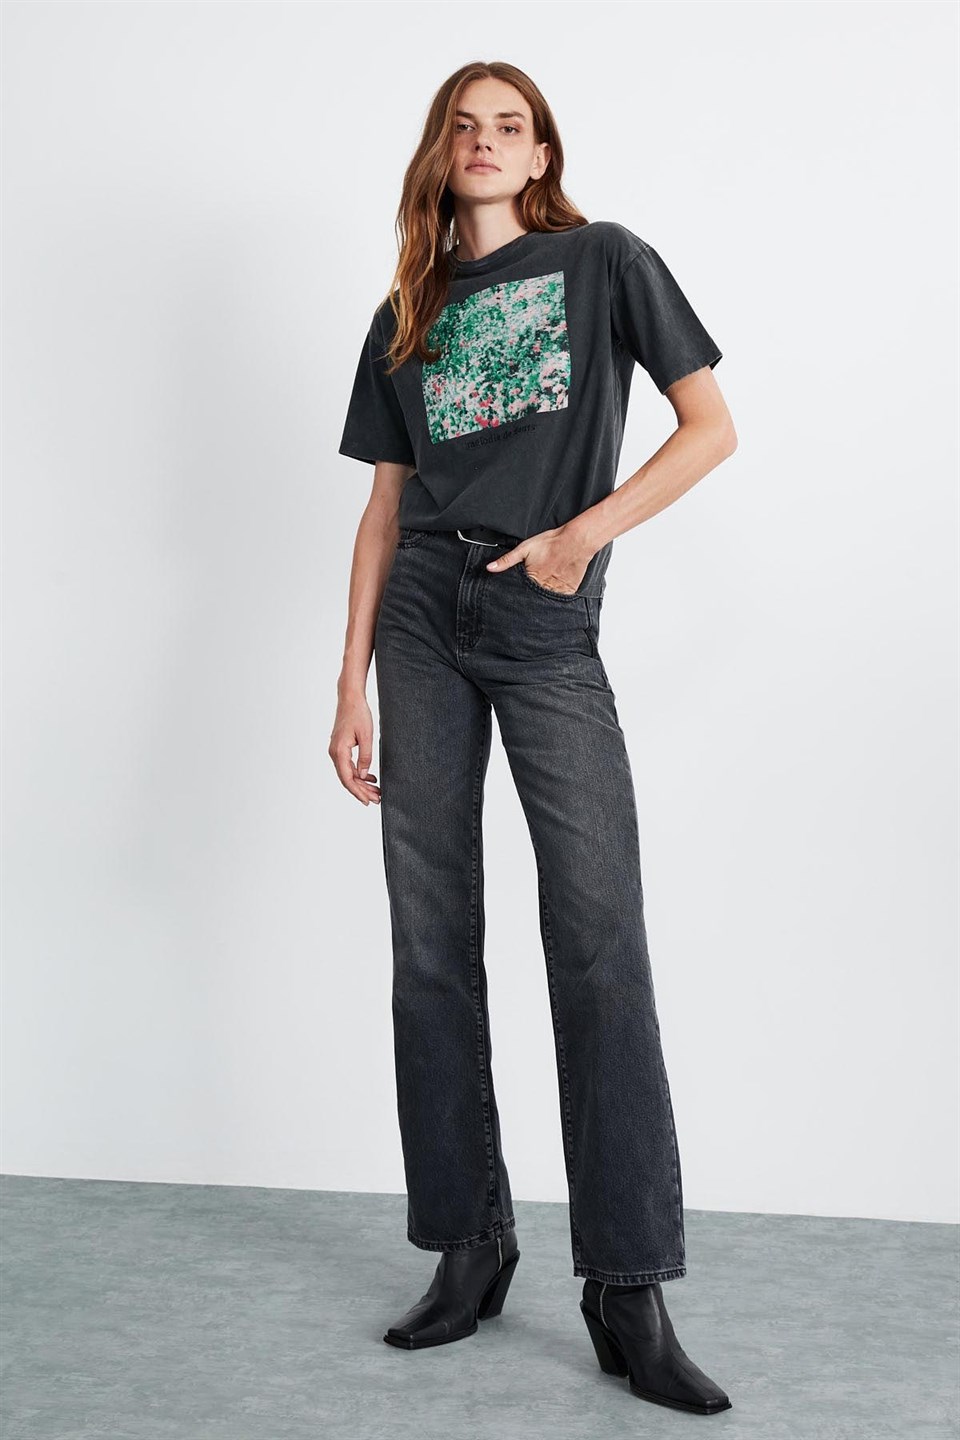 LILO Kadın Koyu Gri Baskılı Yuvarlak Yaka Comfort Fit T-Shirt